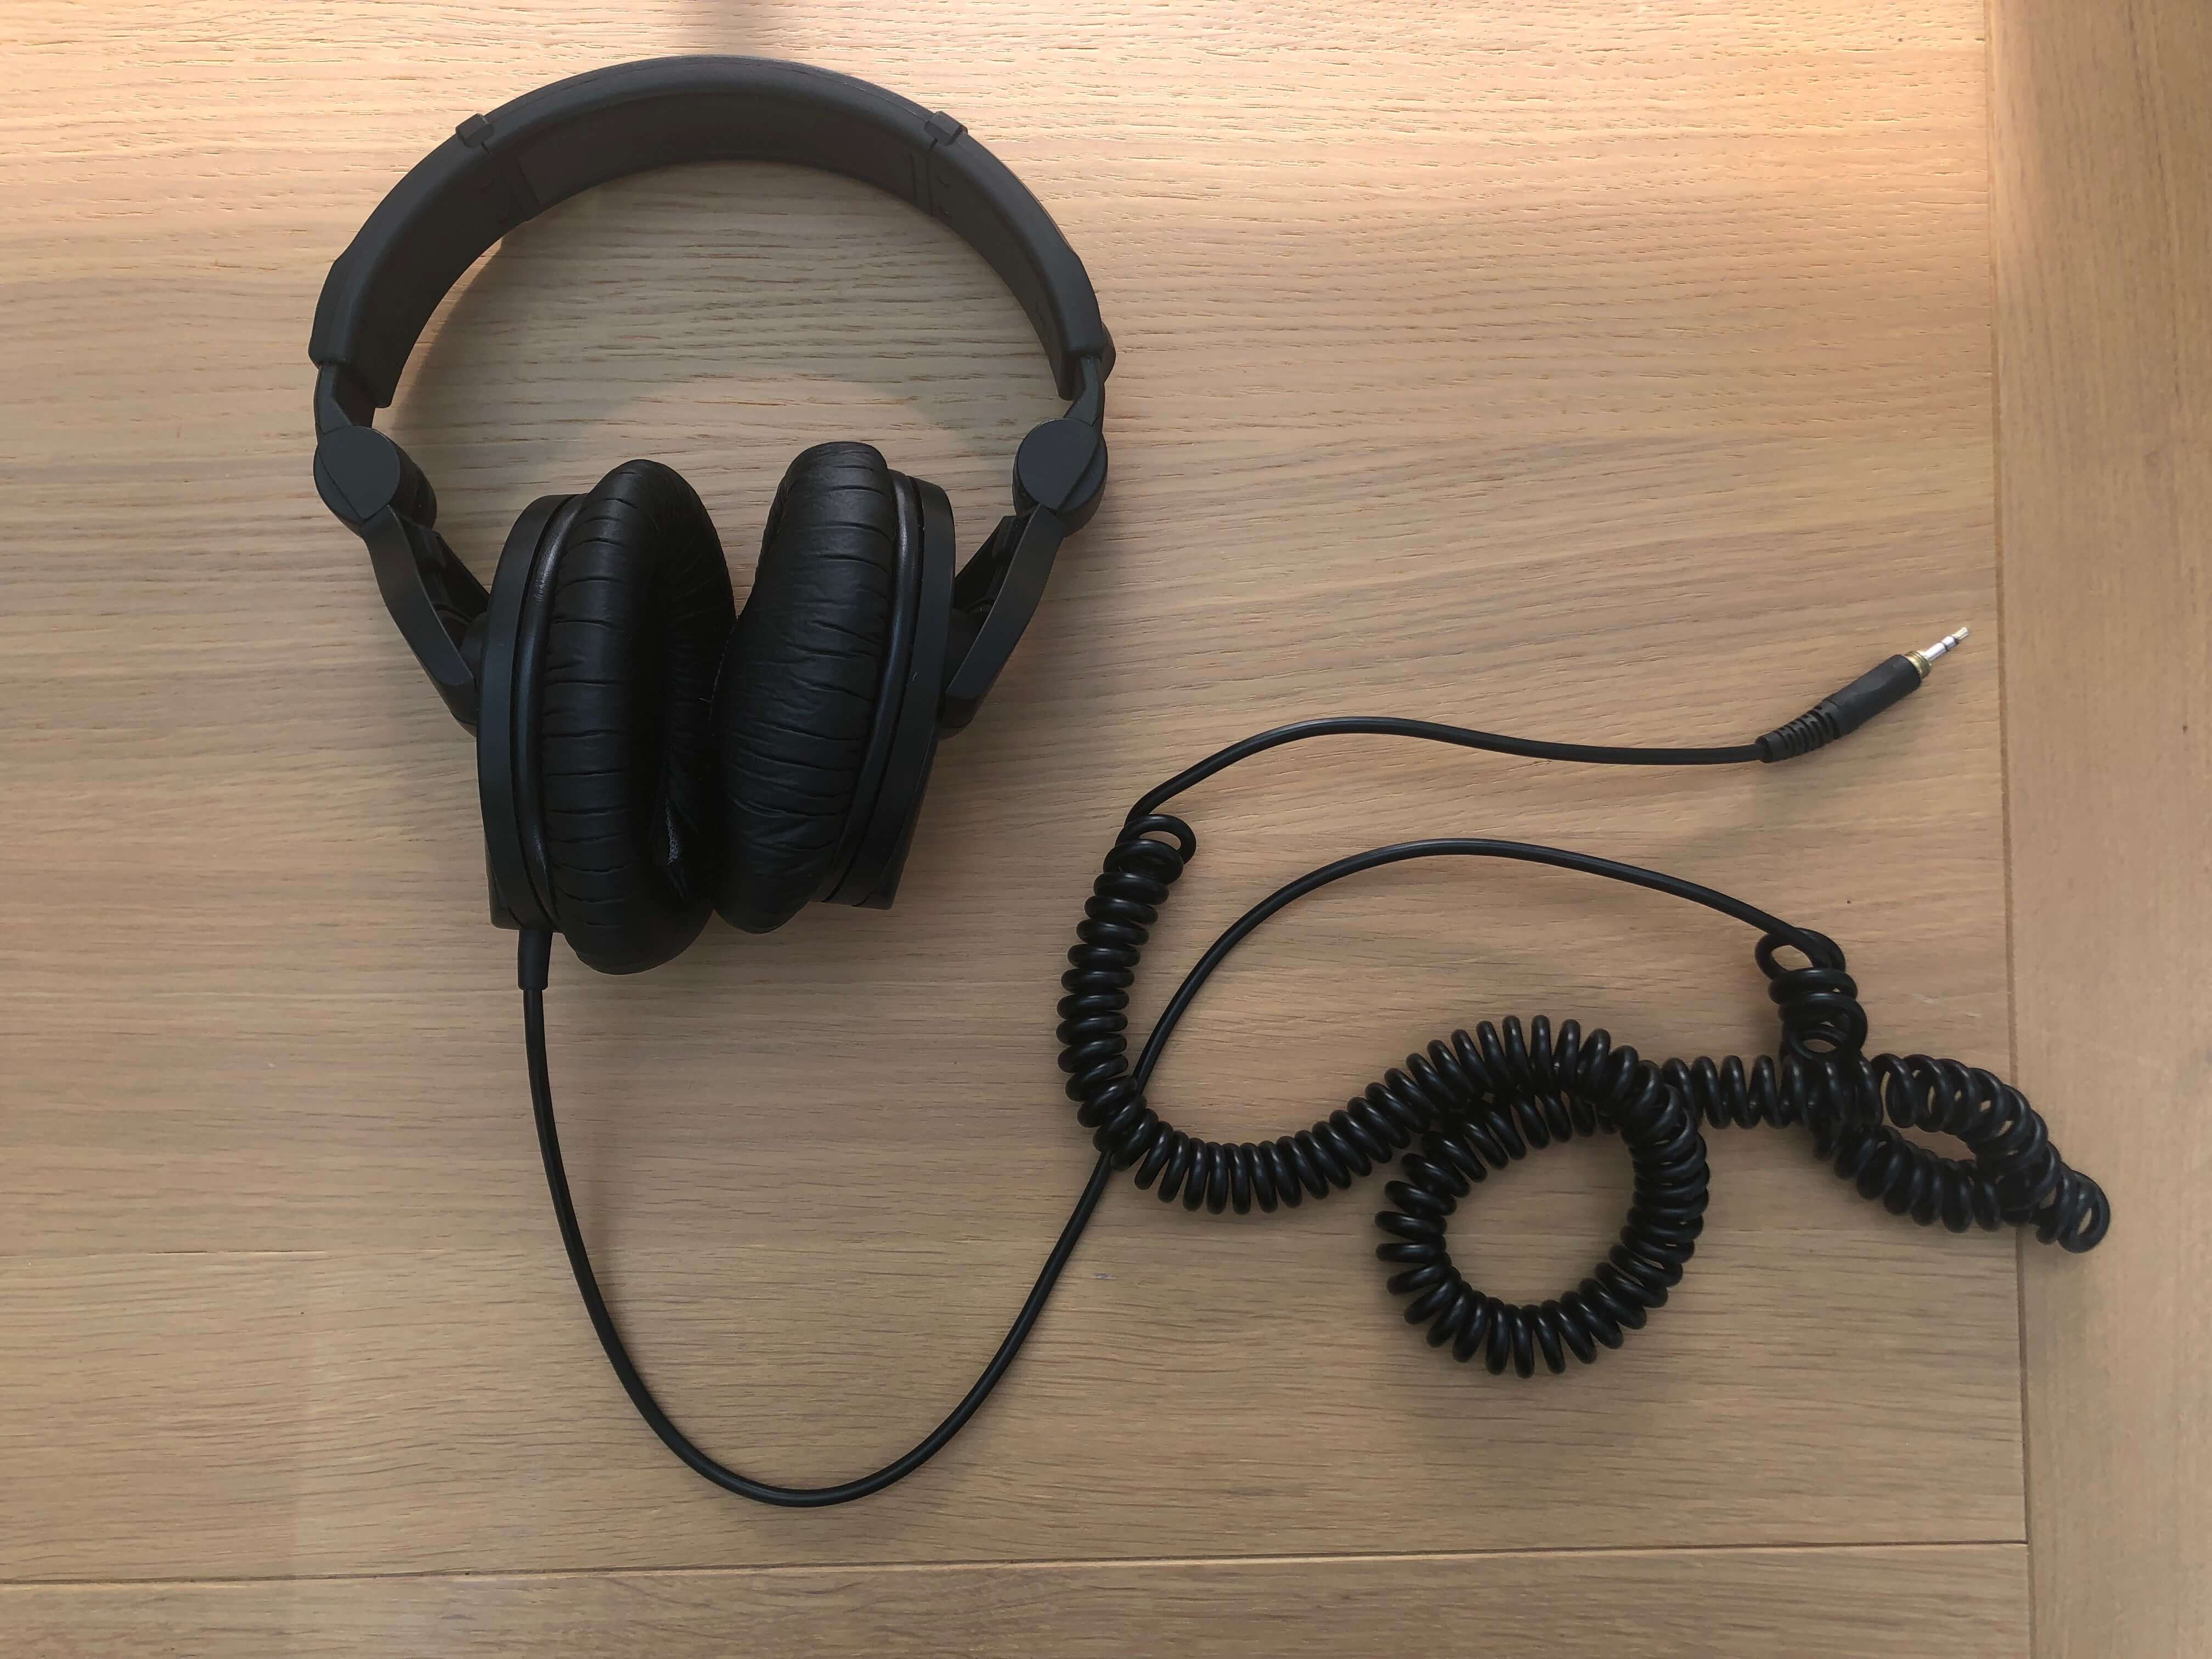 sennheiser 280 headphone review